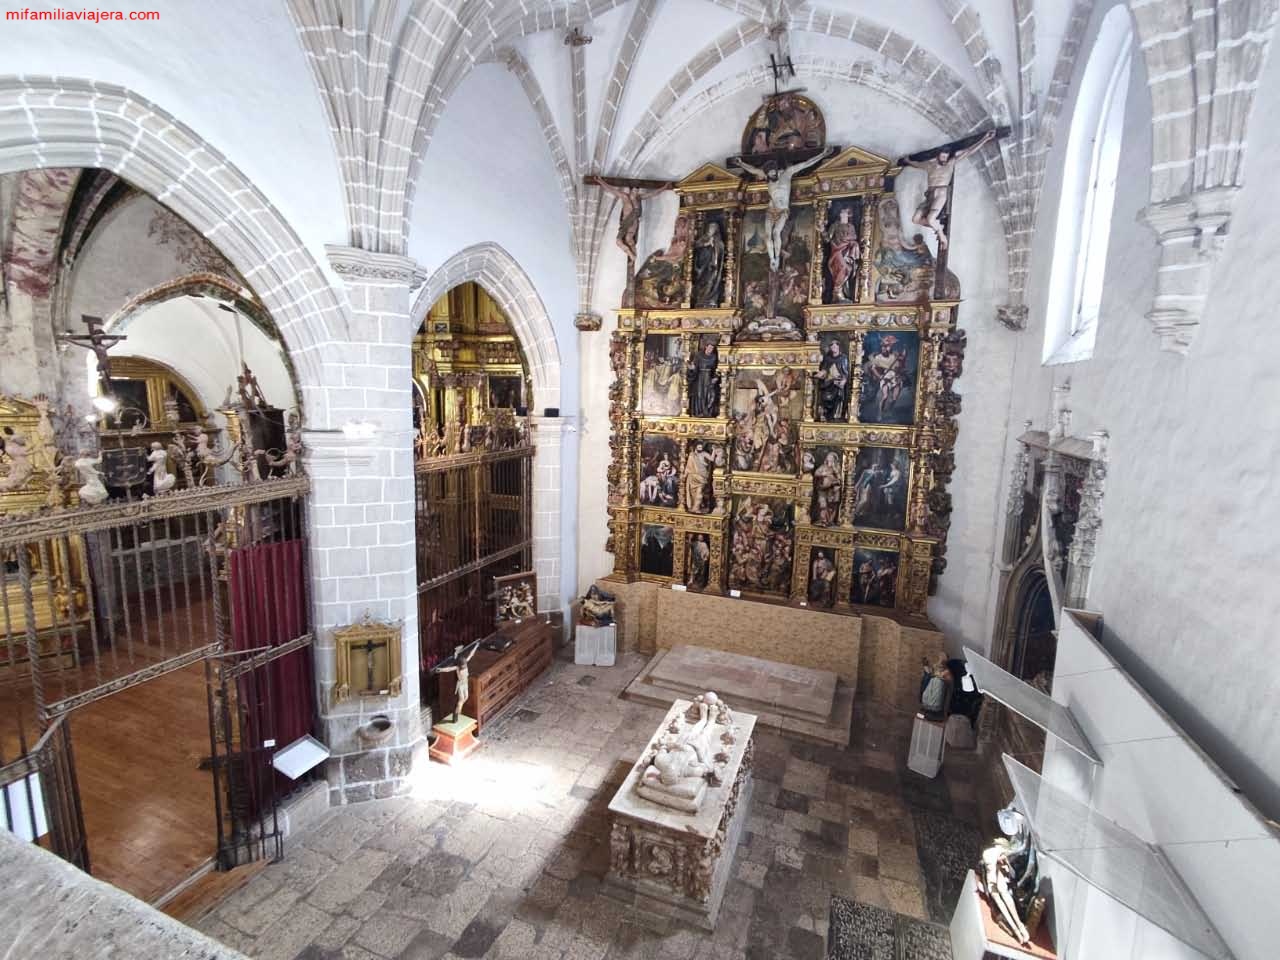 Museo de San Antolín en Tordesillas